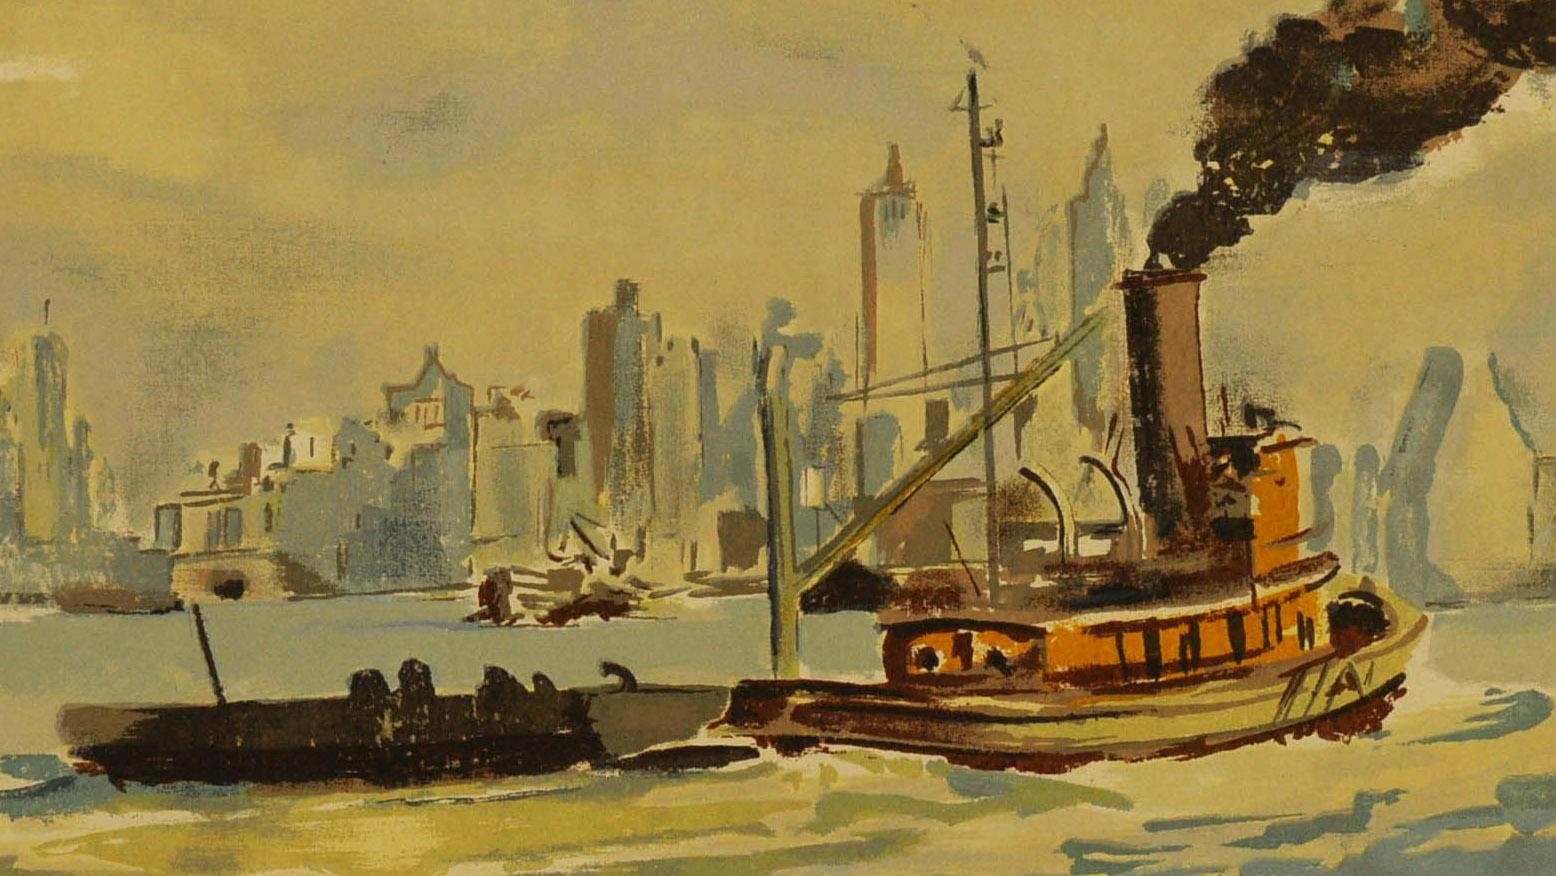 Schlepper im Hafen von New York
Siebdruck, ca. 1942
Signiert im Bildschirm unten rechts (siehe Foto)
Zustand: Ausgezeichnet
Bildgröße: 16 x 20 Zoll
Herausgegeben von Living American Art, Inc. in New York (tätig 1942-43): deren Stempel